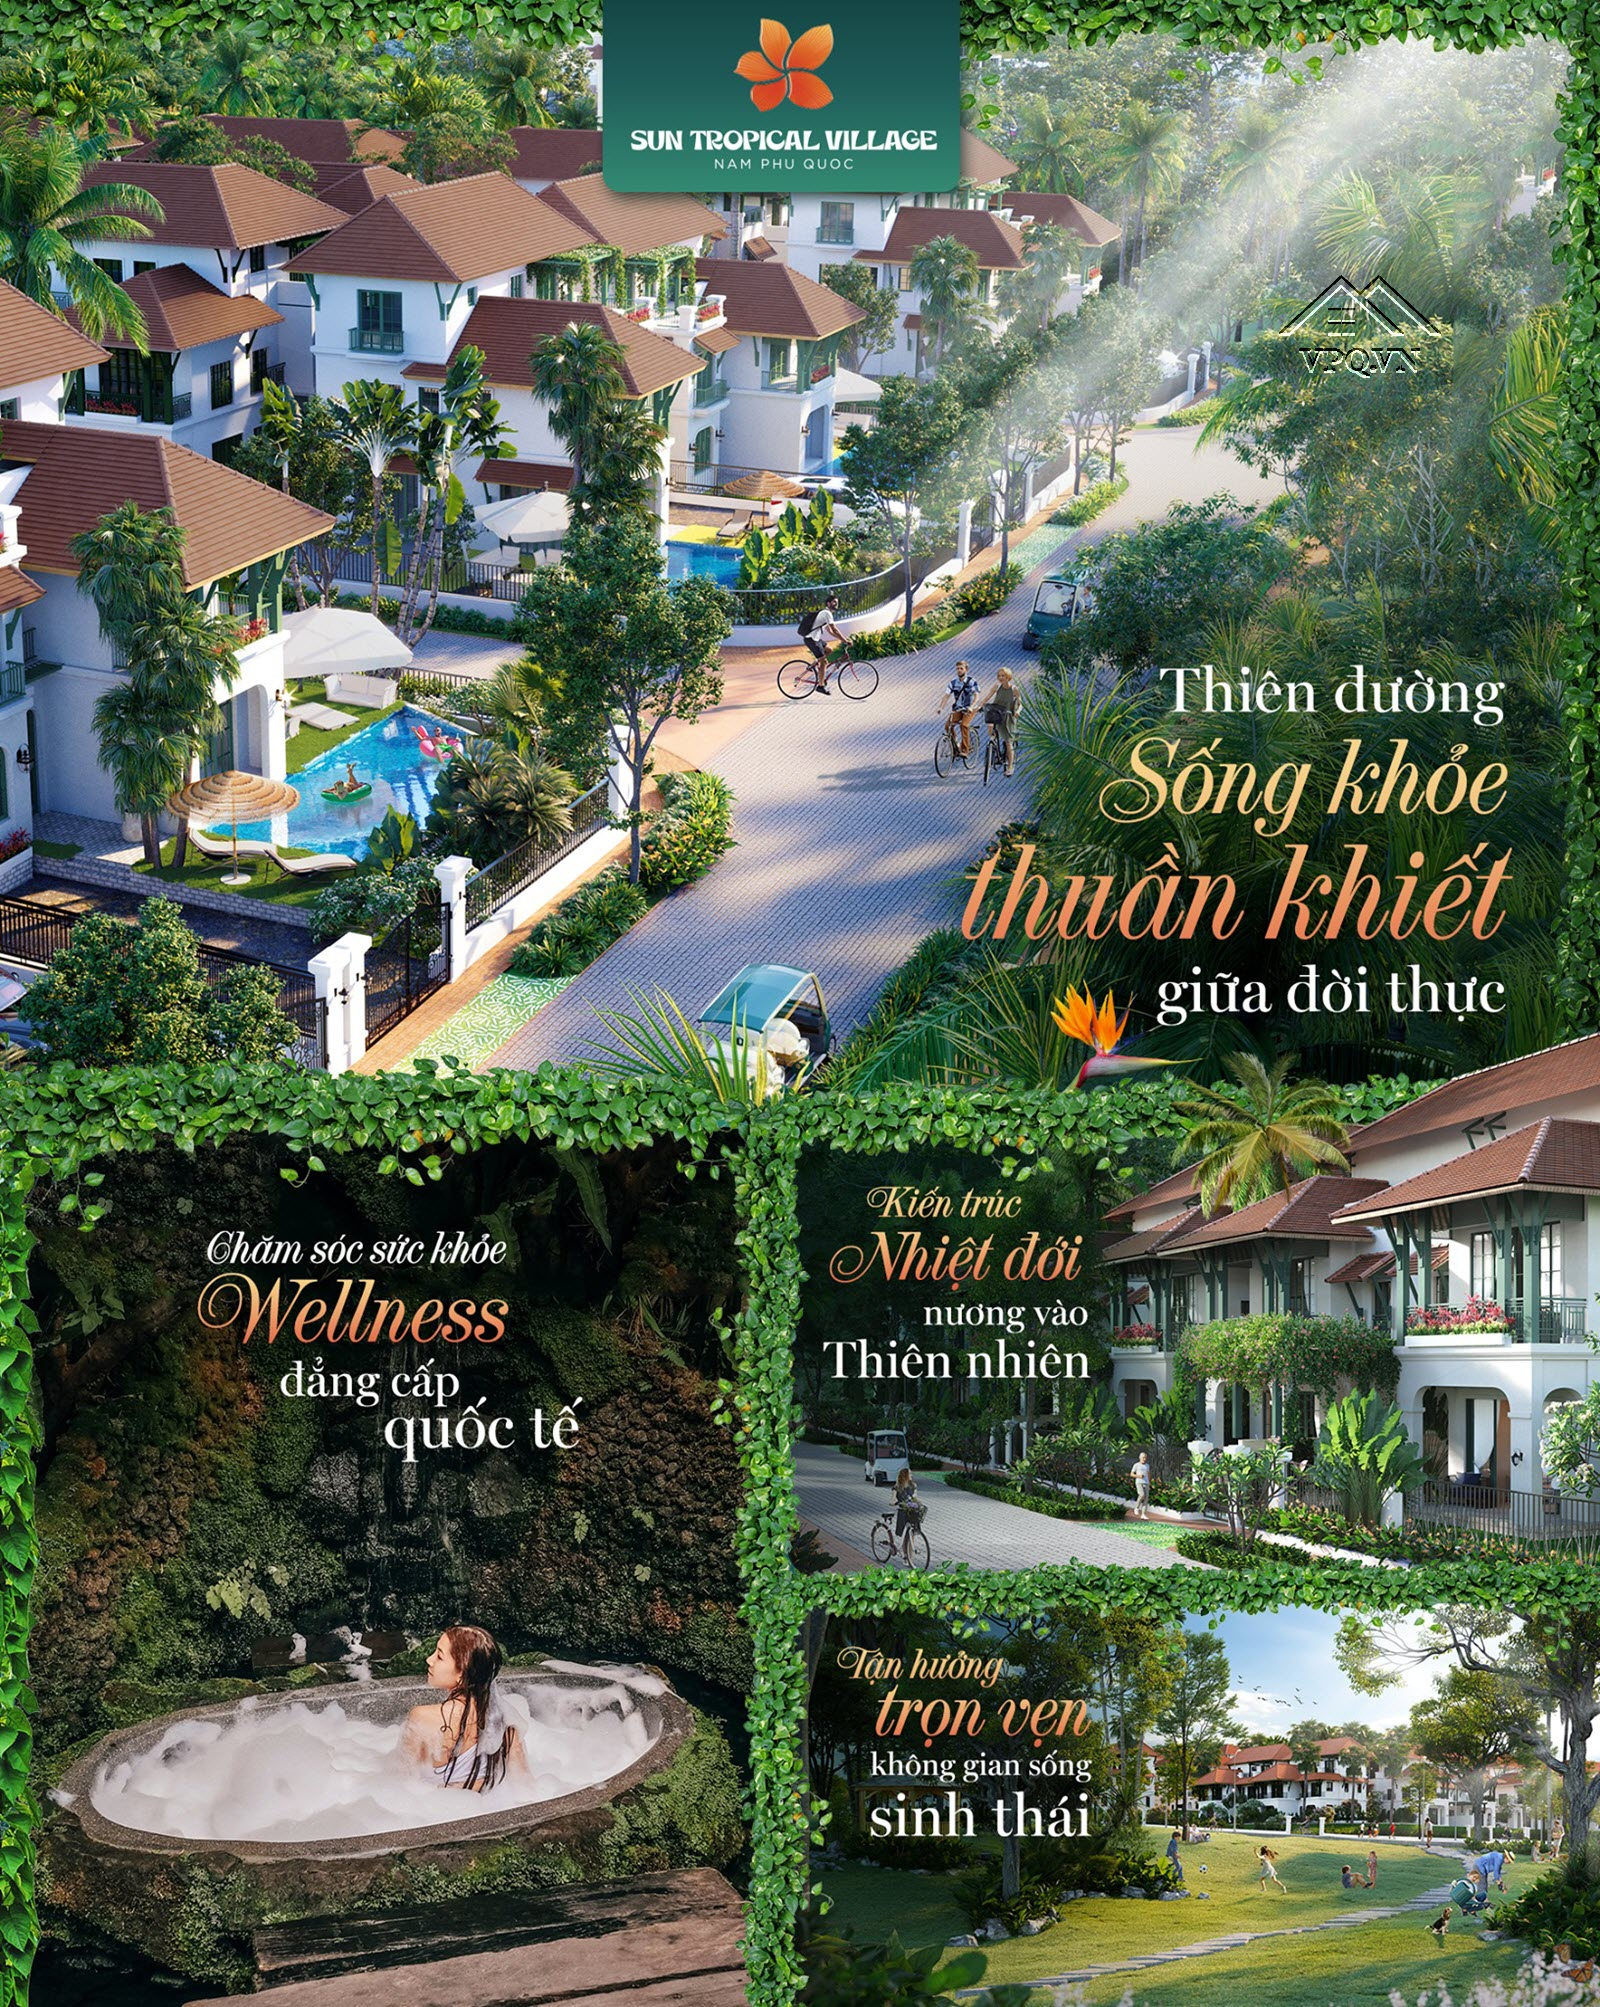 Sun Tropical Village - thiên đường sống khỏe thuần khiết giữa đời thực